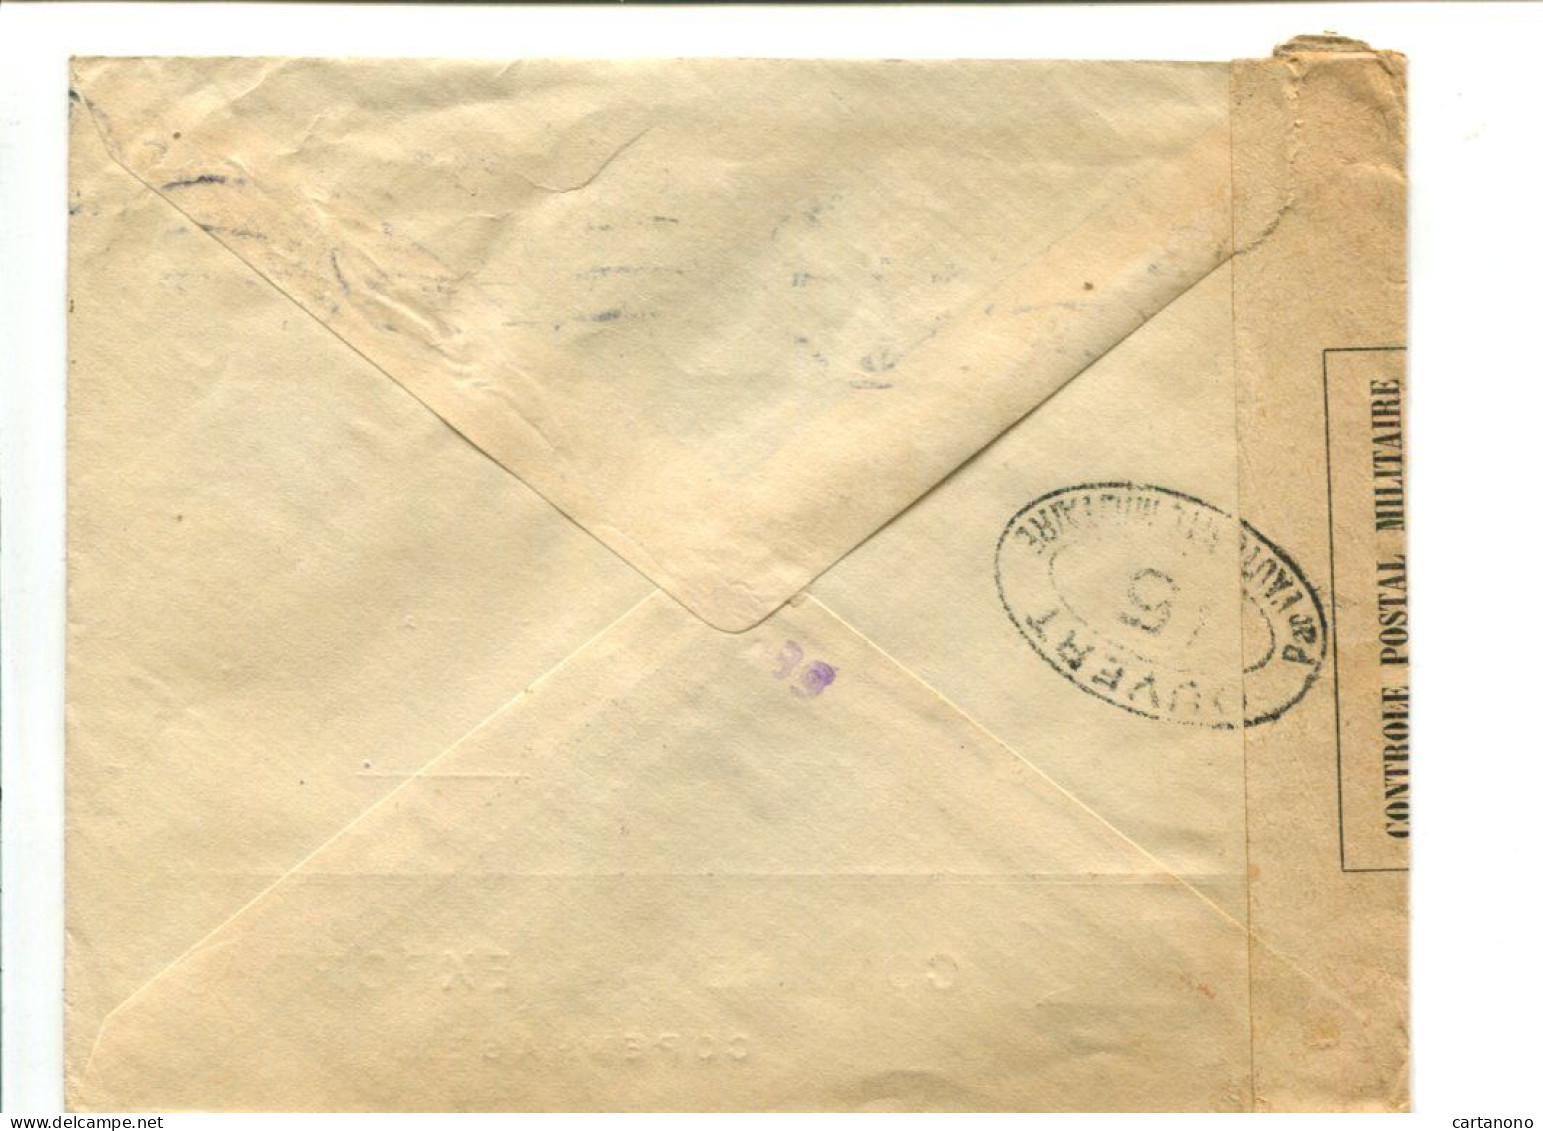 Danemark 1918 Affranchissement Seul Sur Lettre Pour Lyon Avec Censure - Continental Export A/s Copenhagen - Covers & Documents